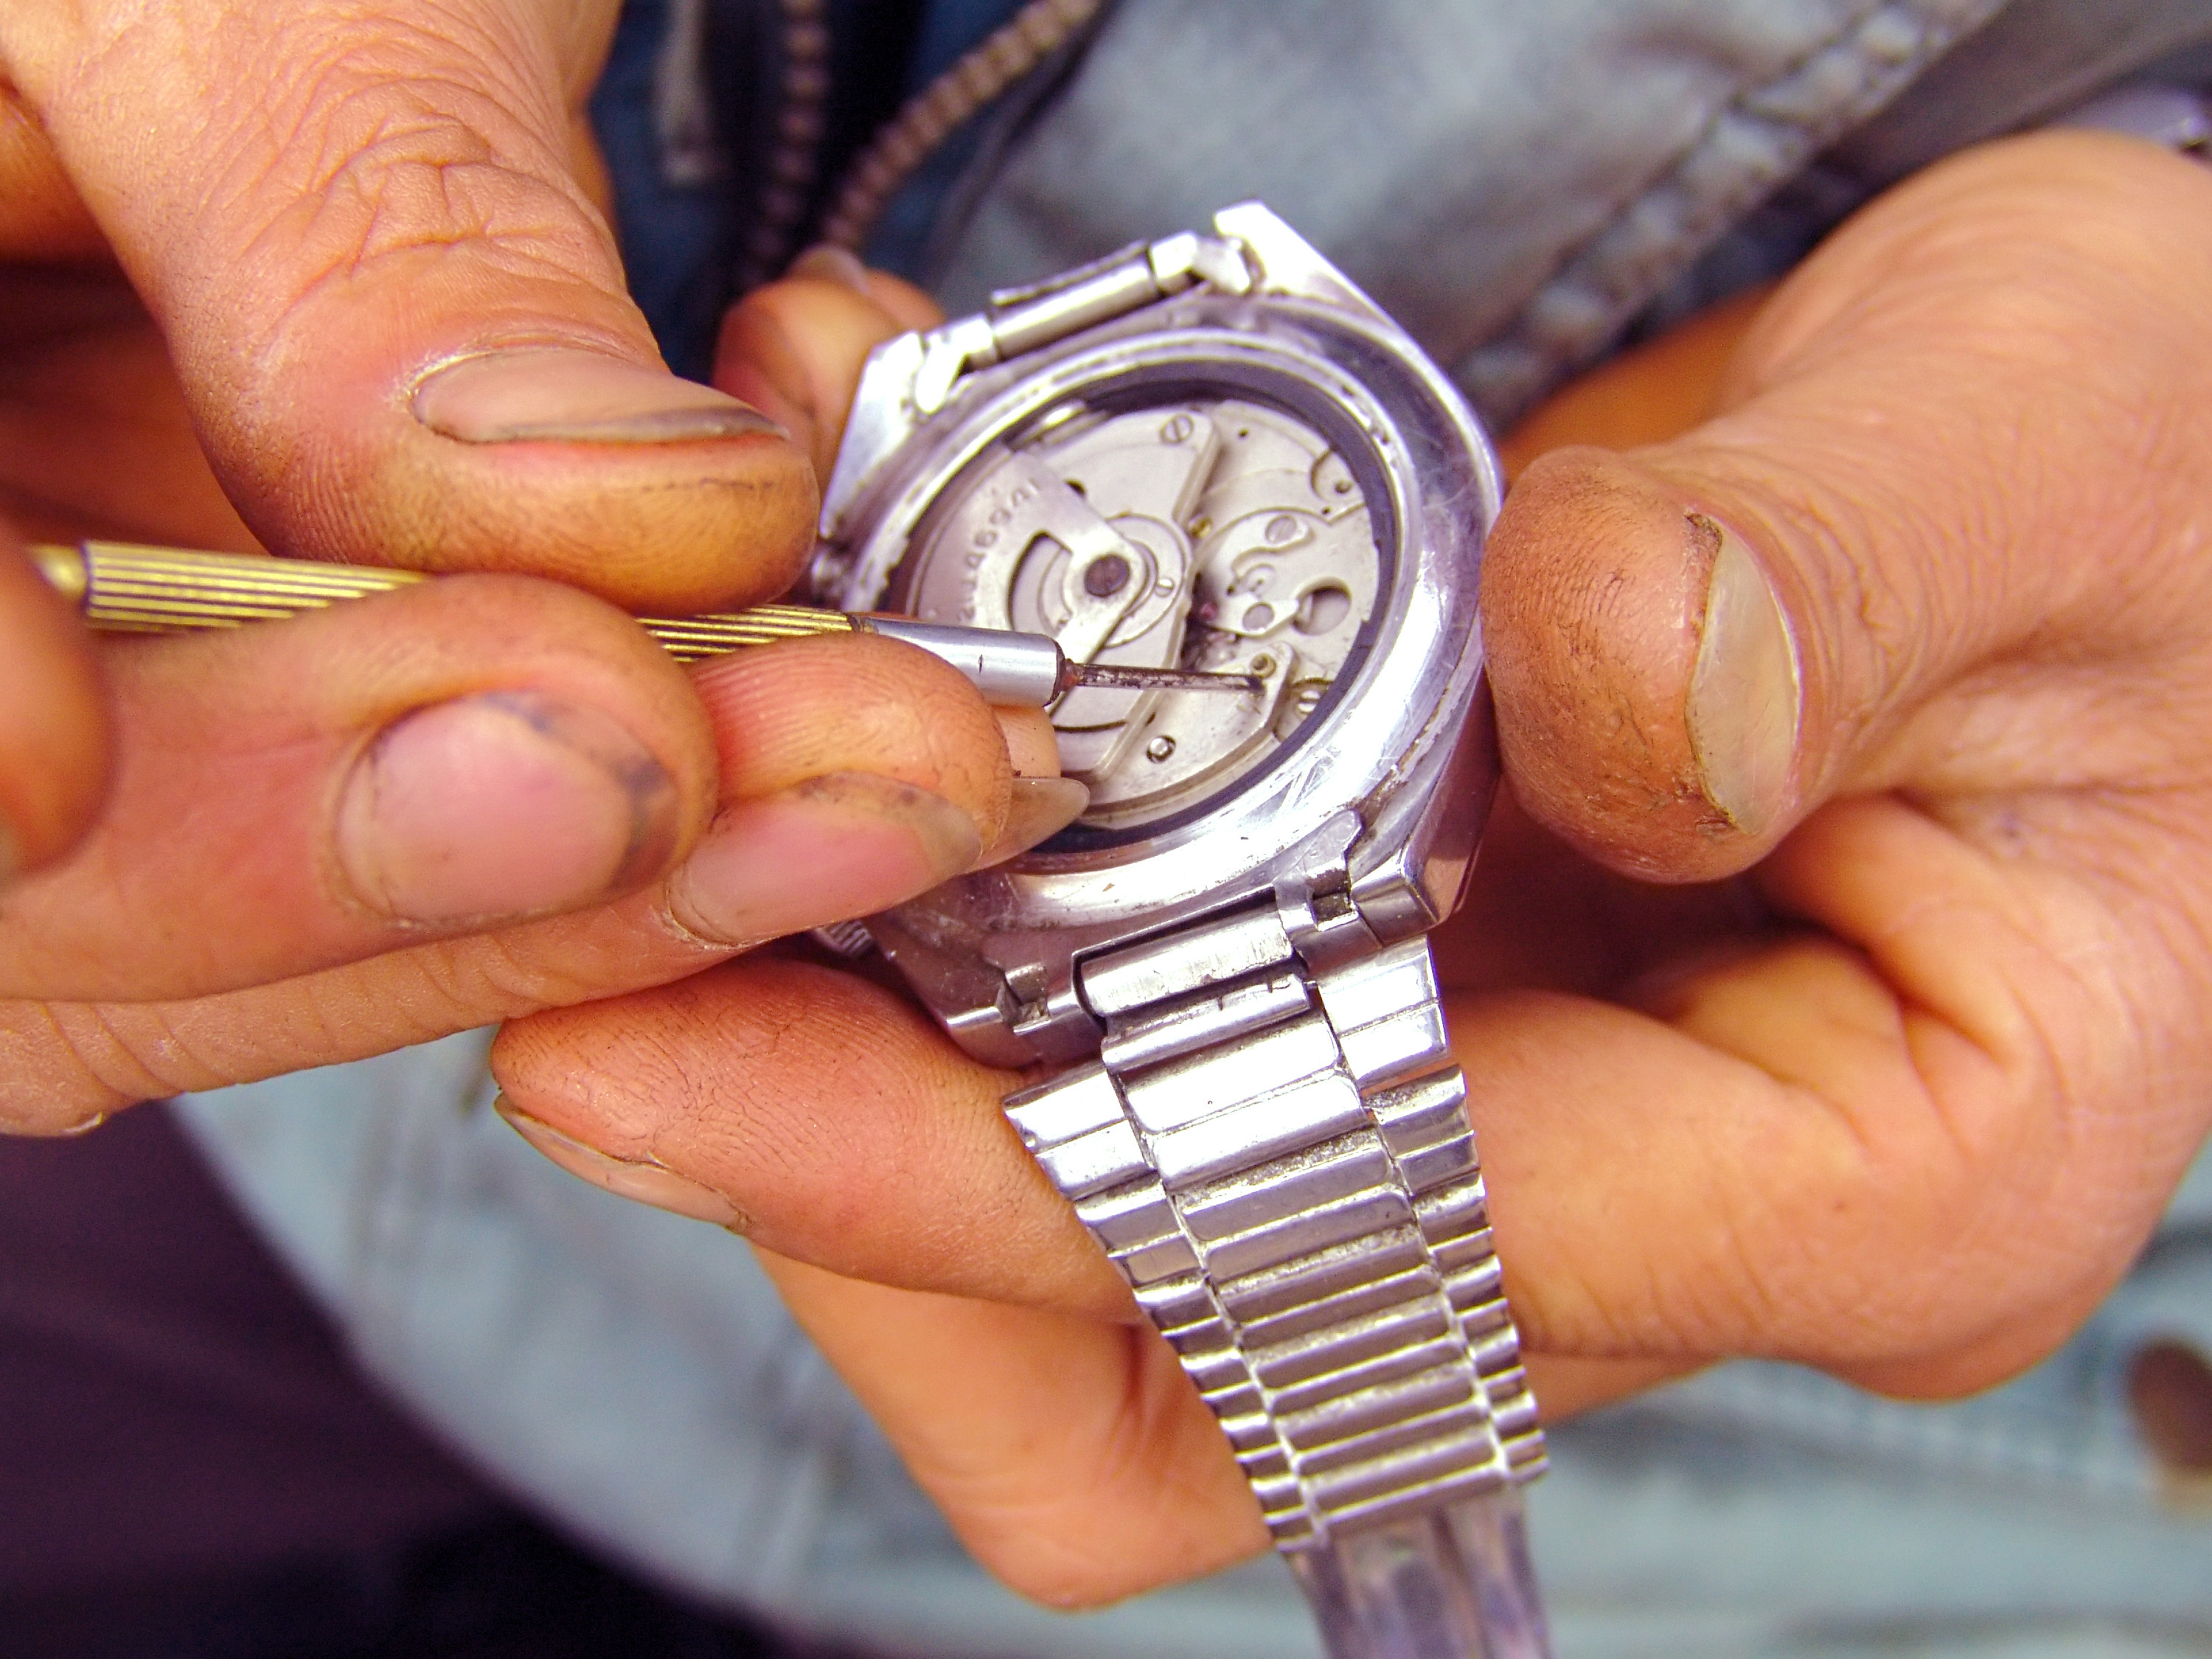 hands construct a wrist watch